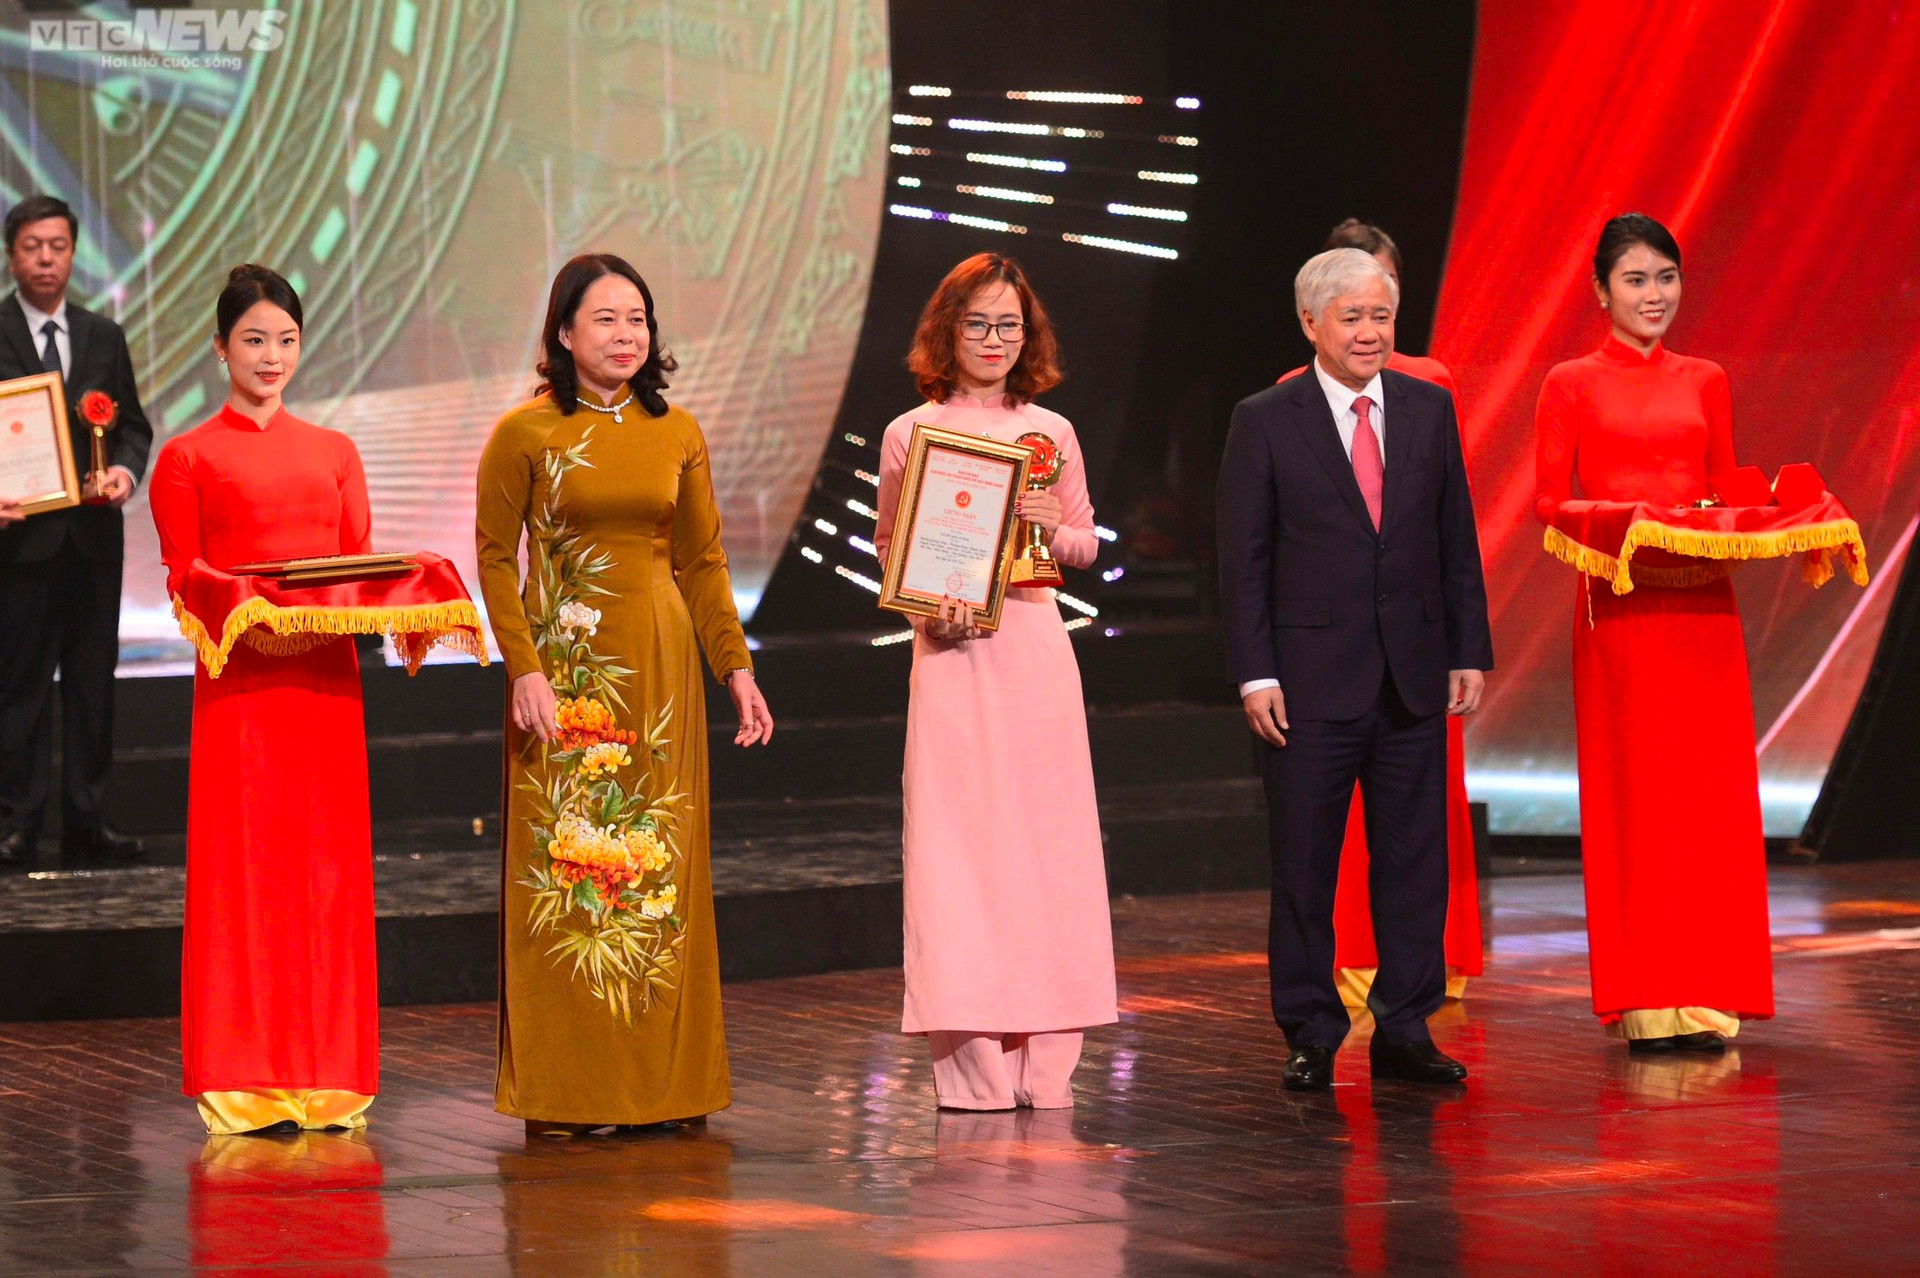 Báo điện tử VTC News đoạt giải chuyên đề xuất sắc Giải Búa liềm vàng lần thứ VII - 1